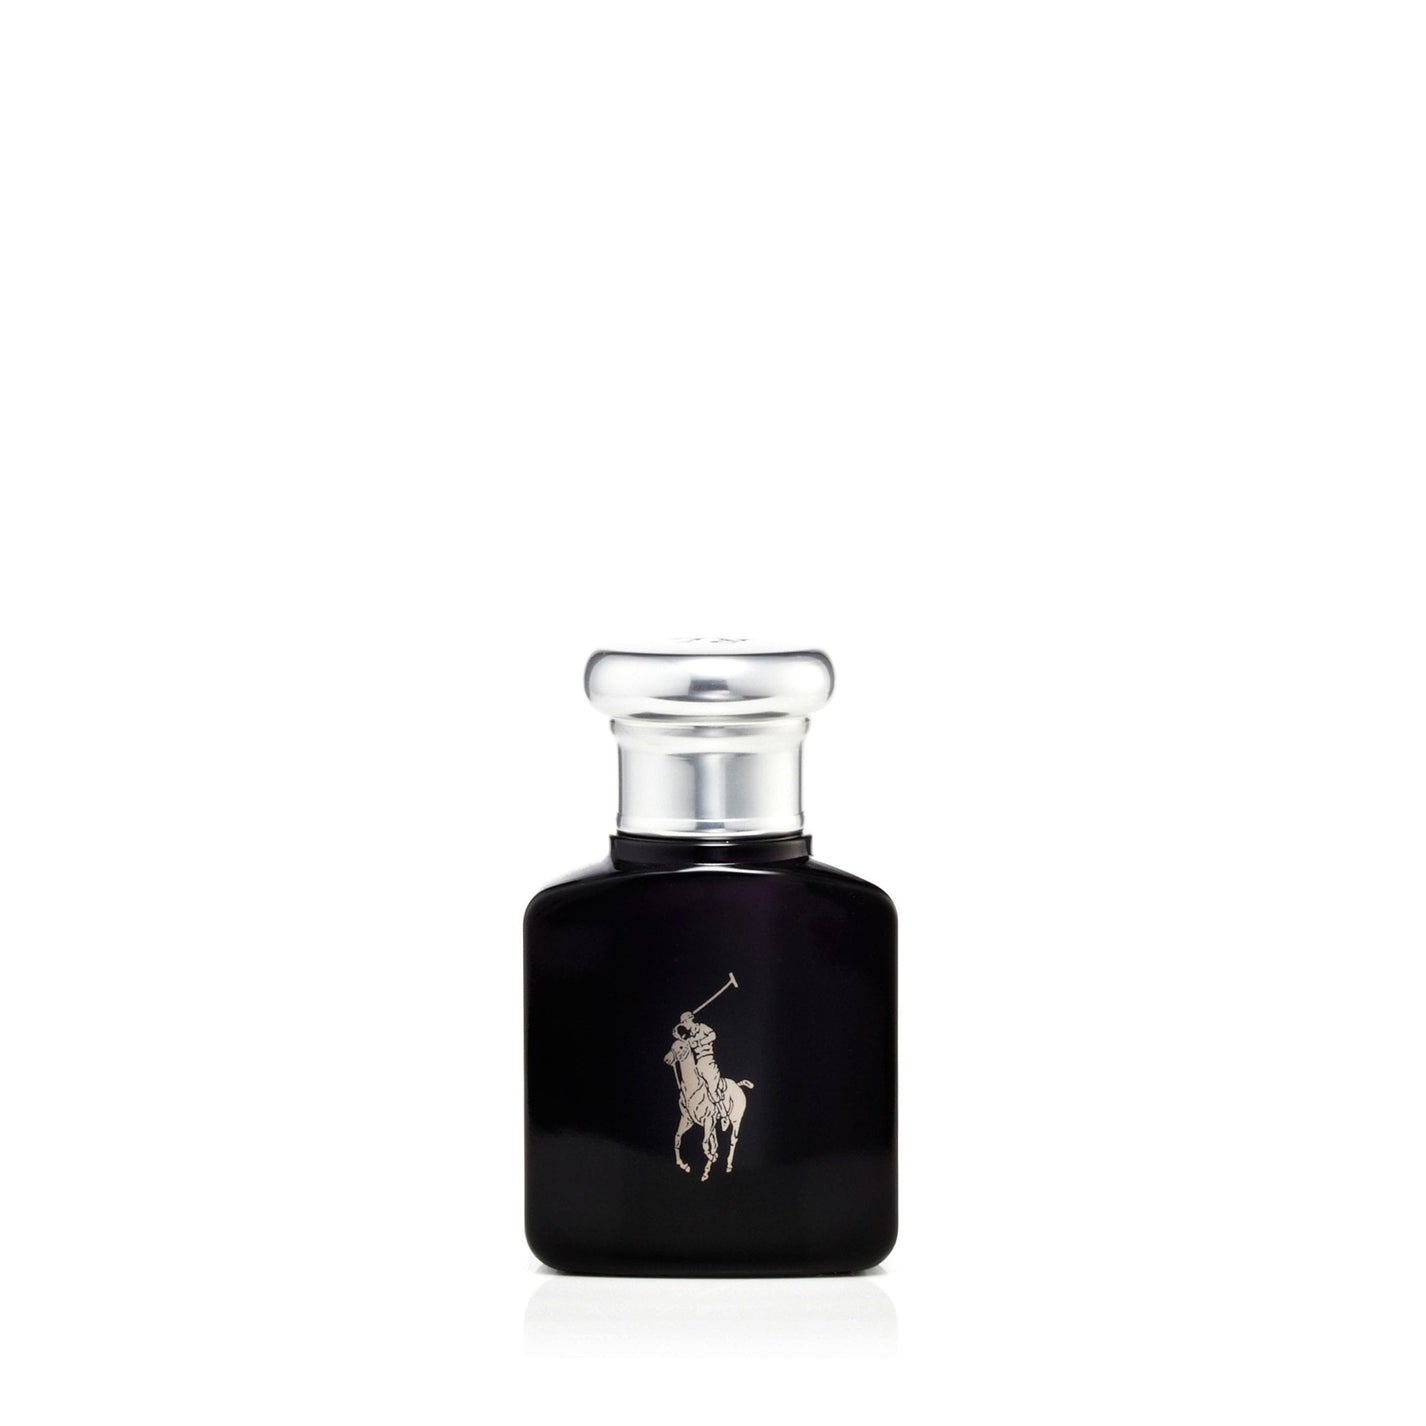 Polo Black Eau de Toilette Spray for Men by Ralph Lauren – Fragrance Outlet